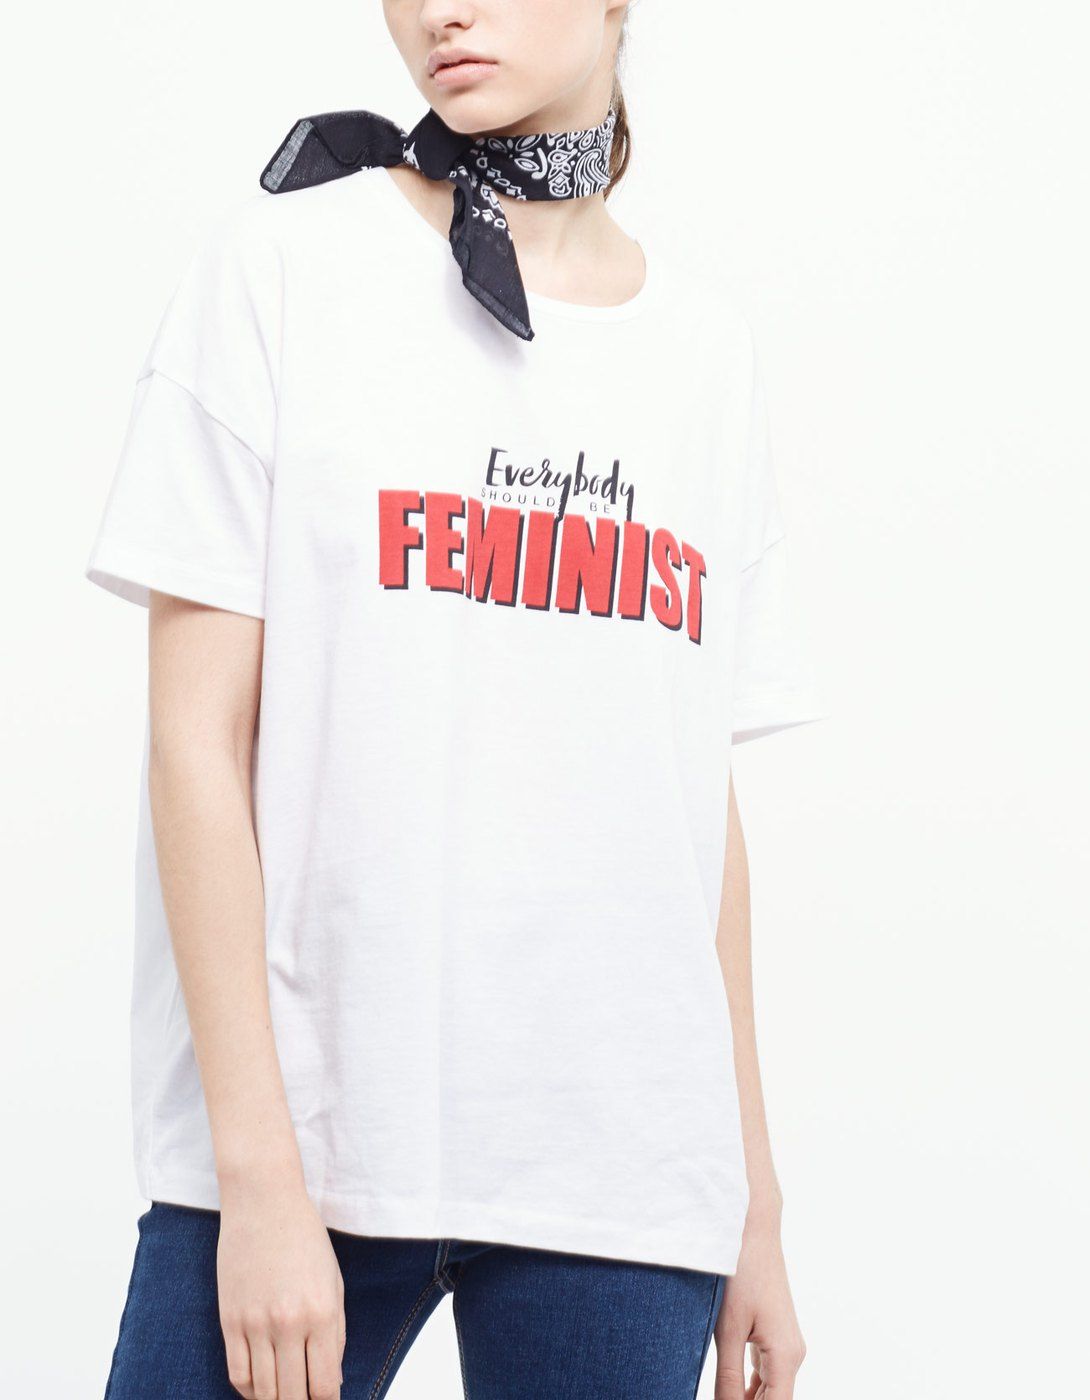 Vas a querer camiseta feminista